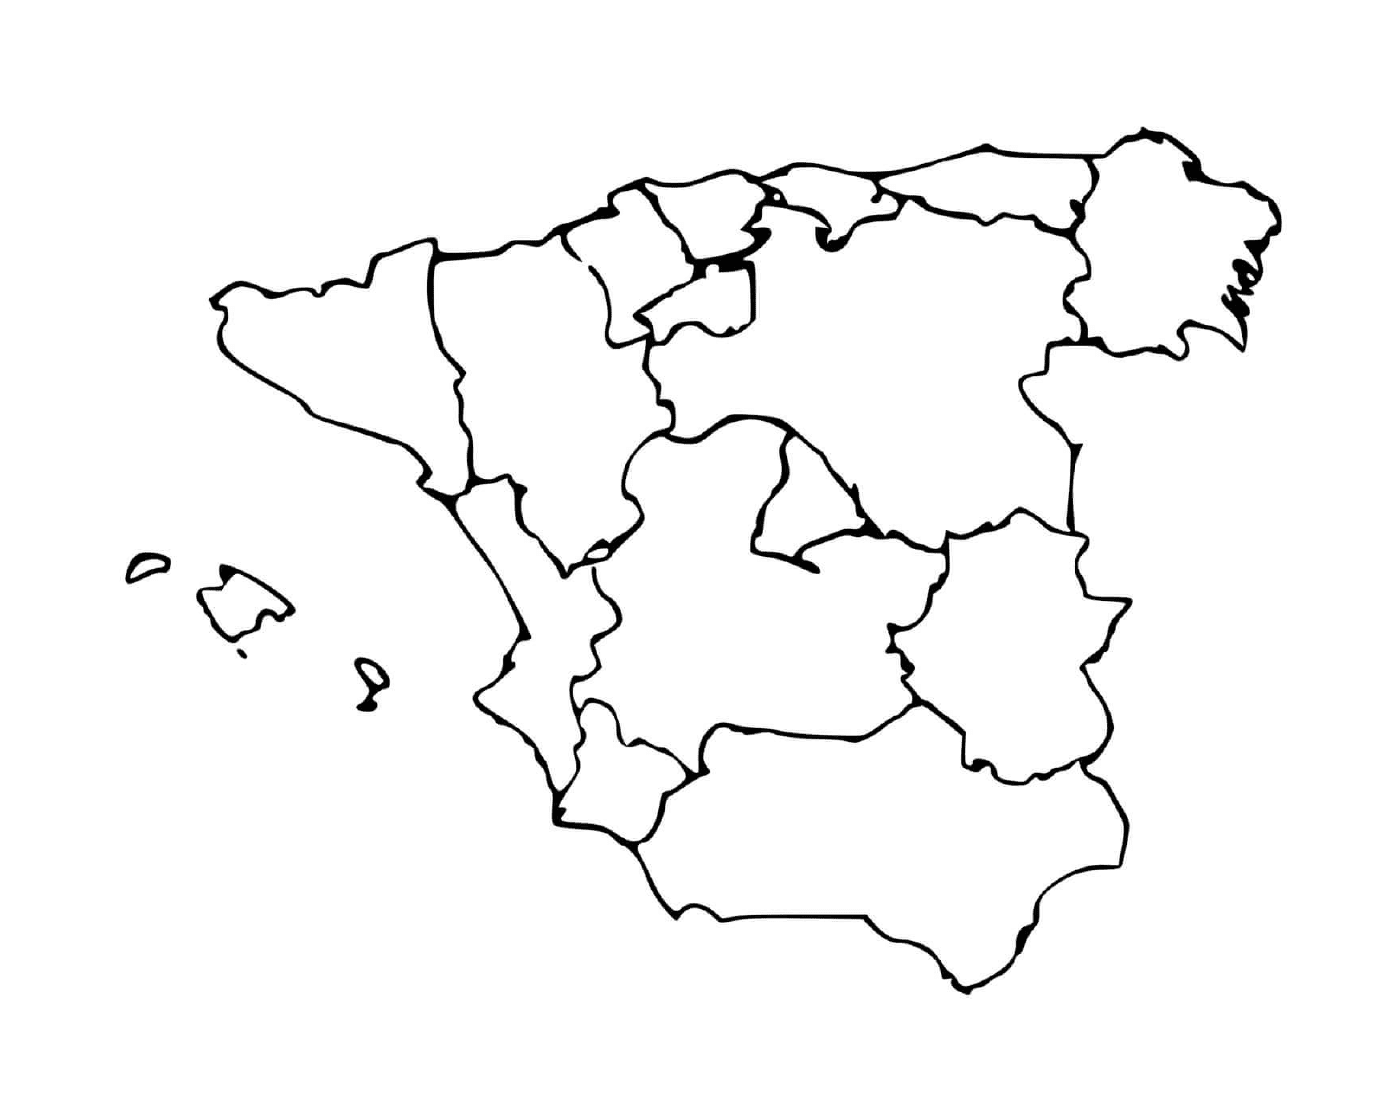  Detaillierte Karte von Spanien 